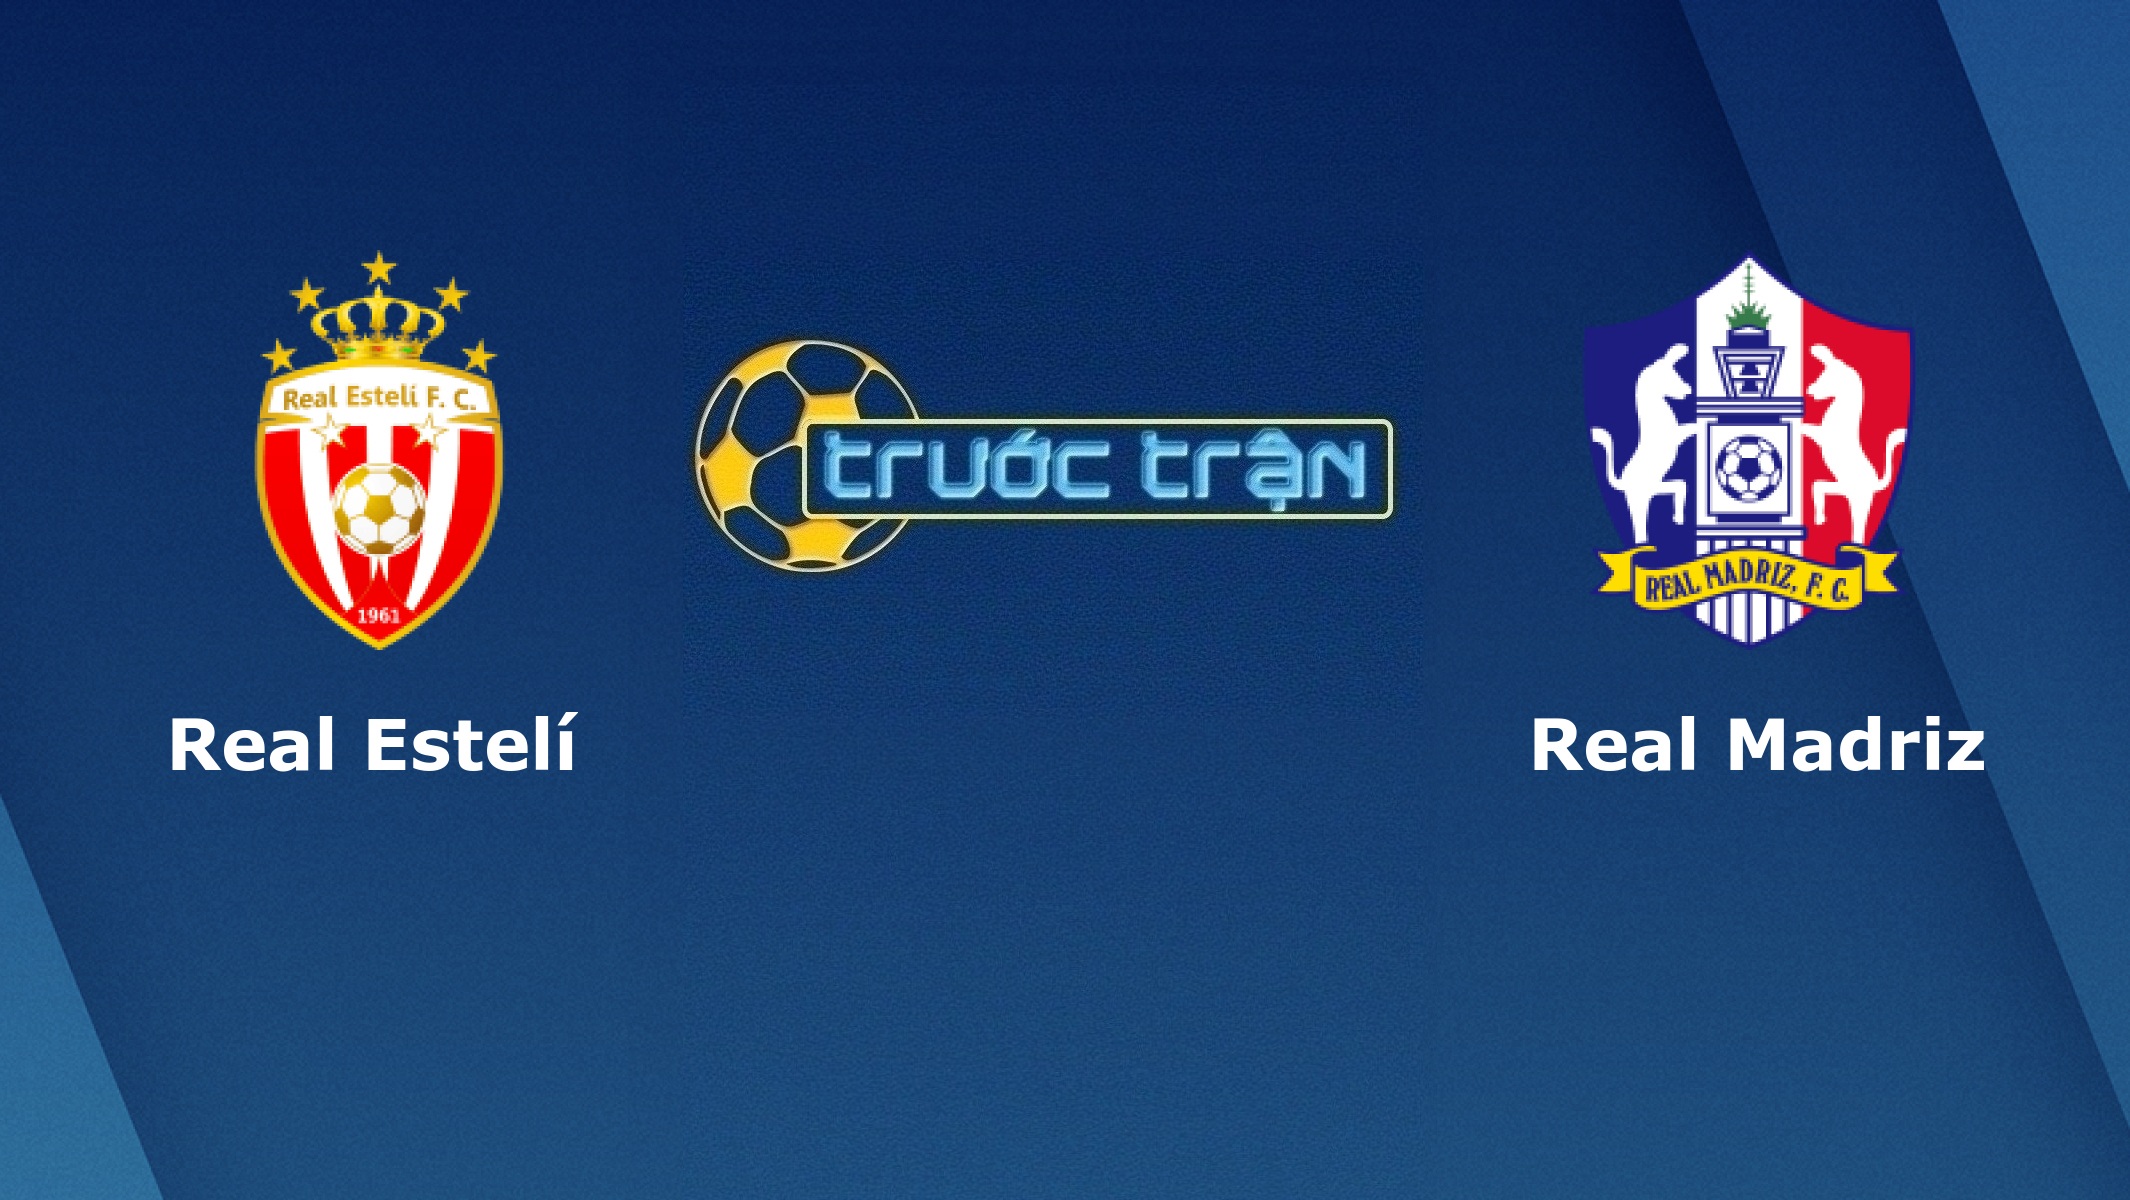 Real Esteli vs Real Madriz FC – Tip kèo bóng đá hôm nay – 22/03